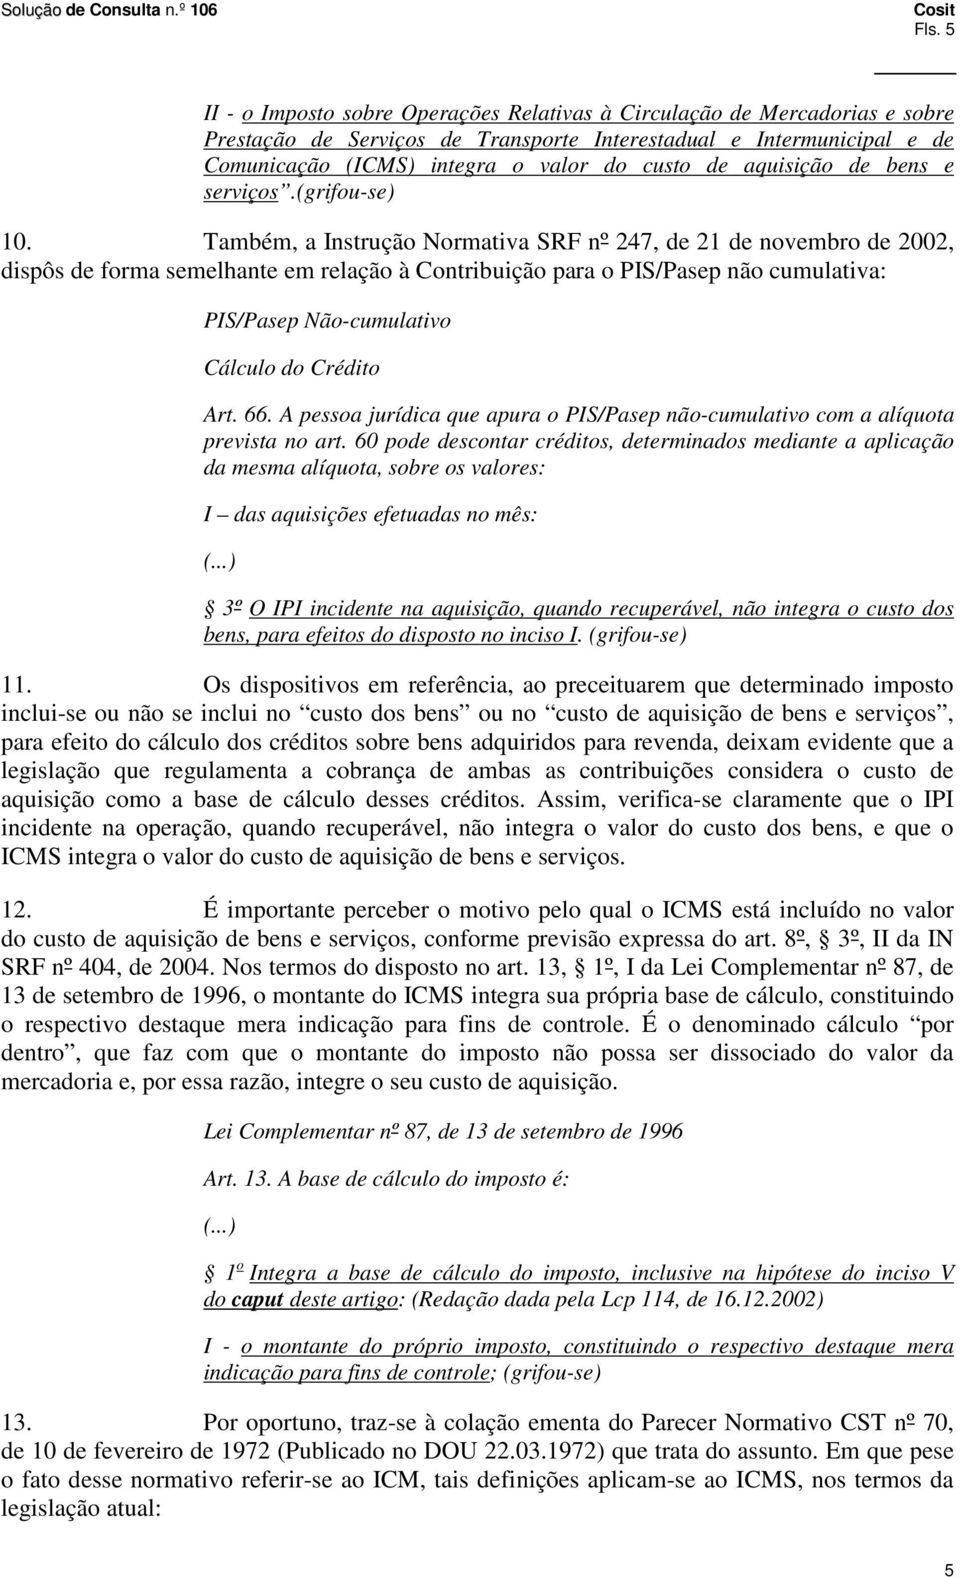 Também, a Instrução Normativa SRF nº 247, de 21 de novembro de 2002, dispôs de forma semelhante em relação à Contribuição para o PIS/Pasep não cumulativa: PIS/Pasep Não-cumulativo Cálculo do Crédito